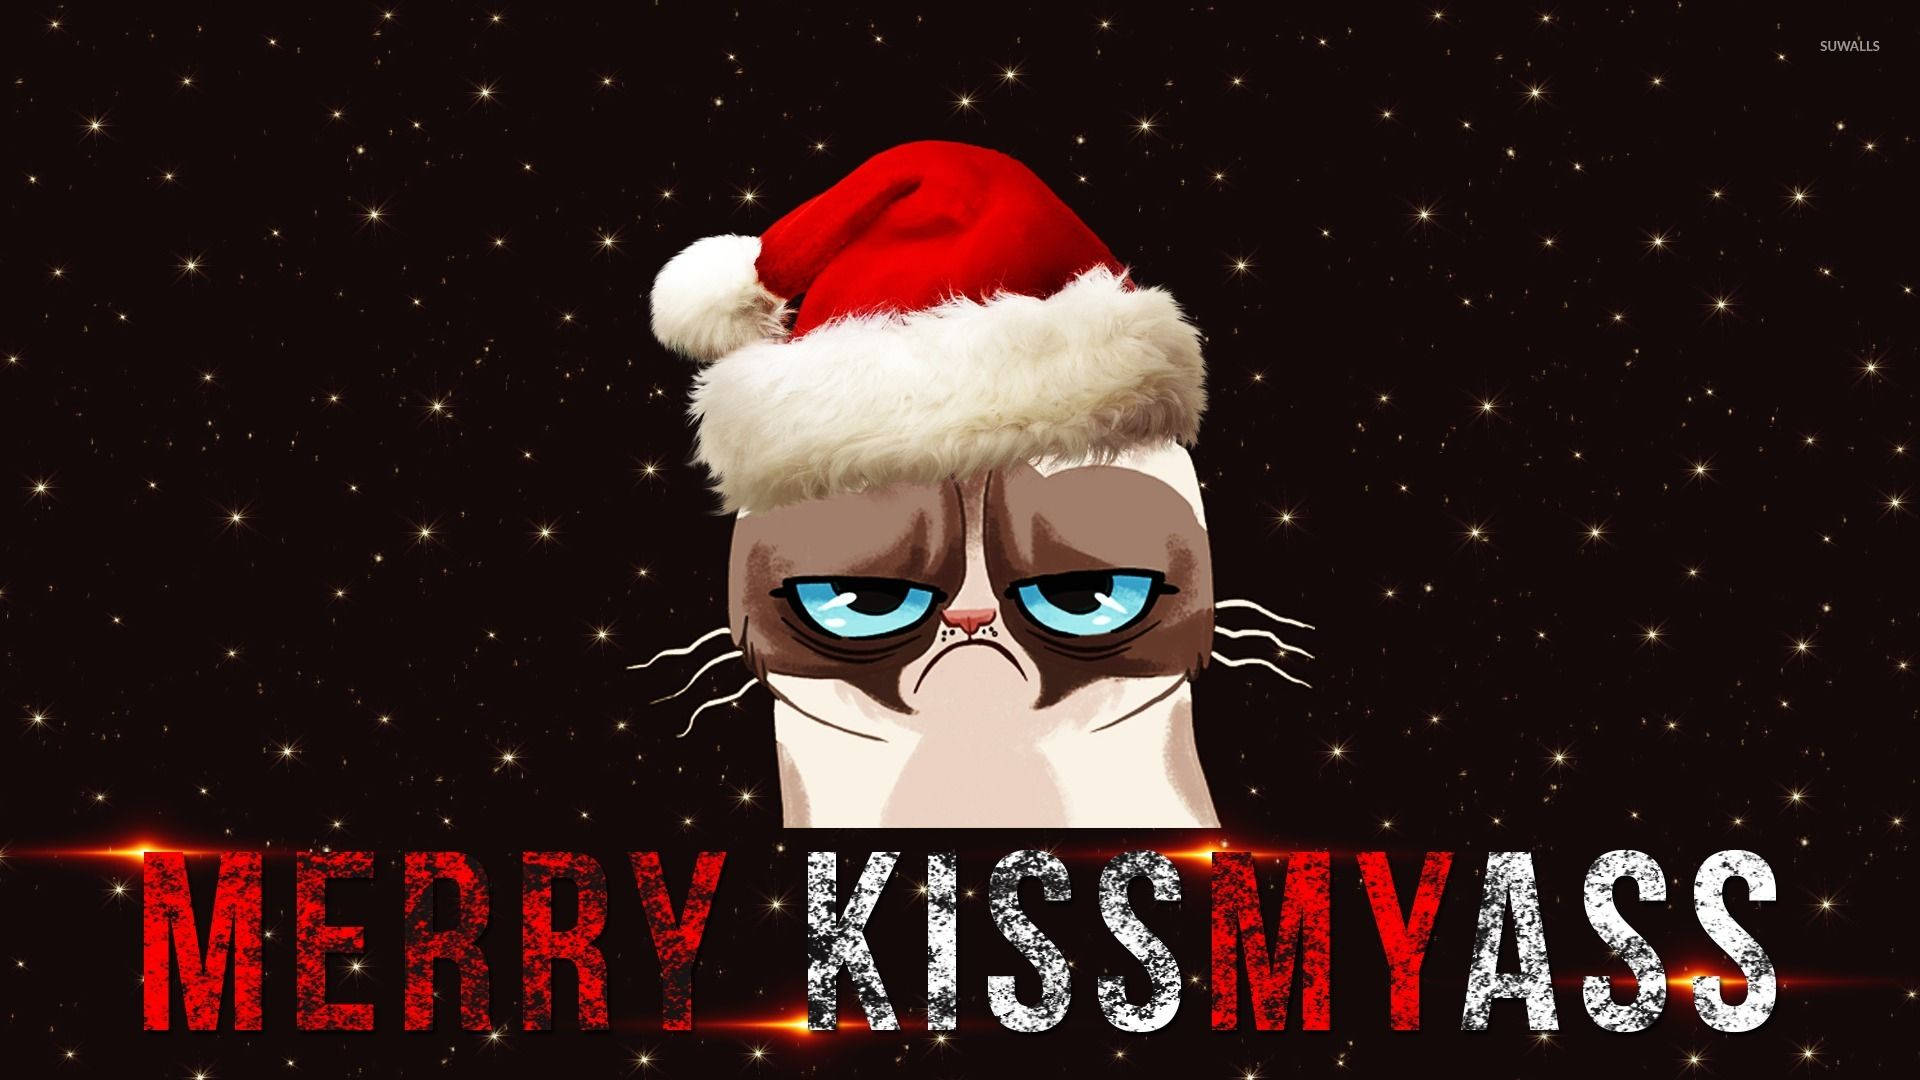 Santa cat meme wallpaper